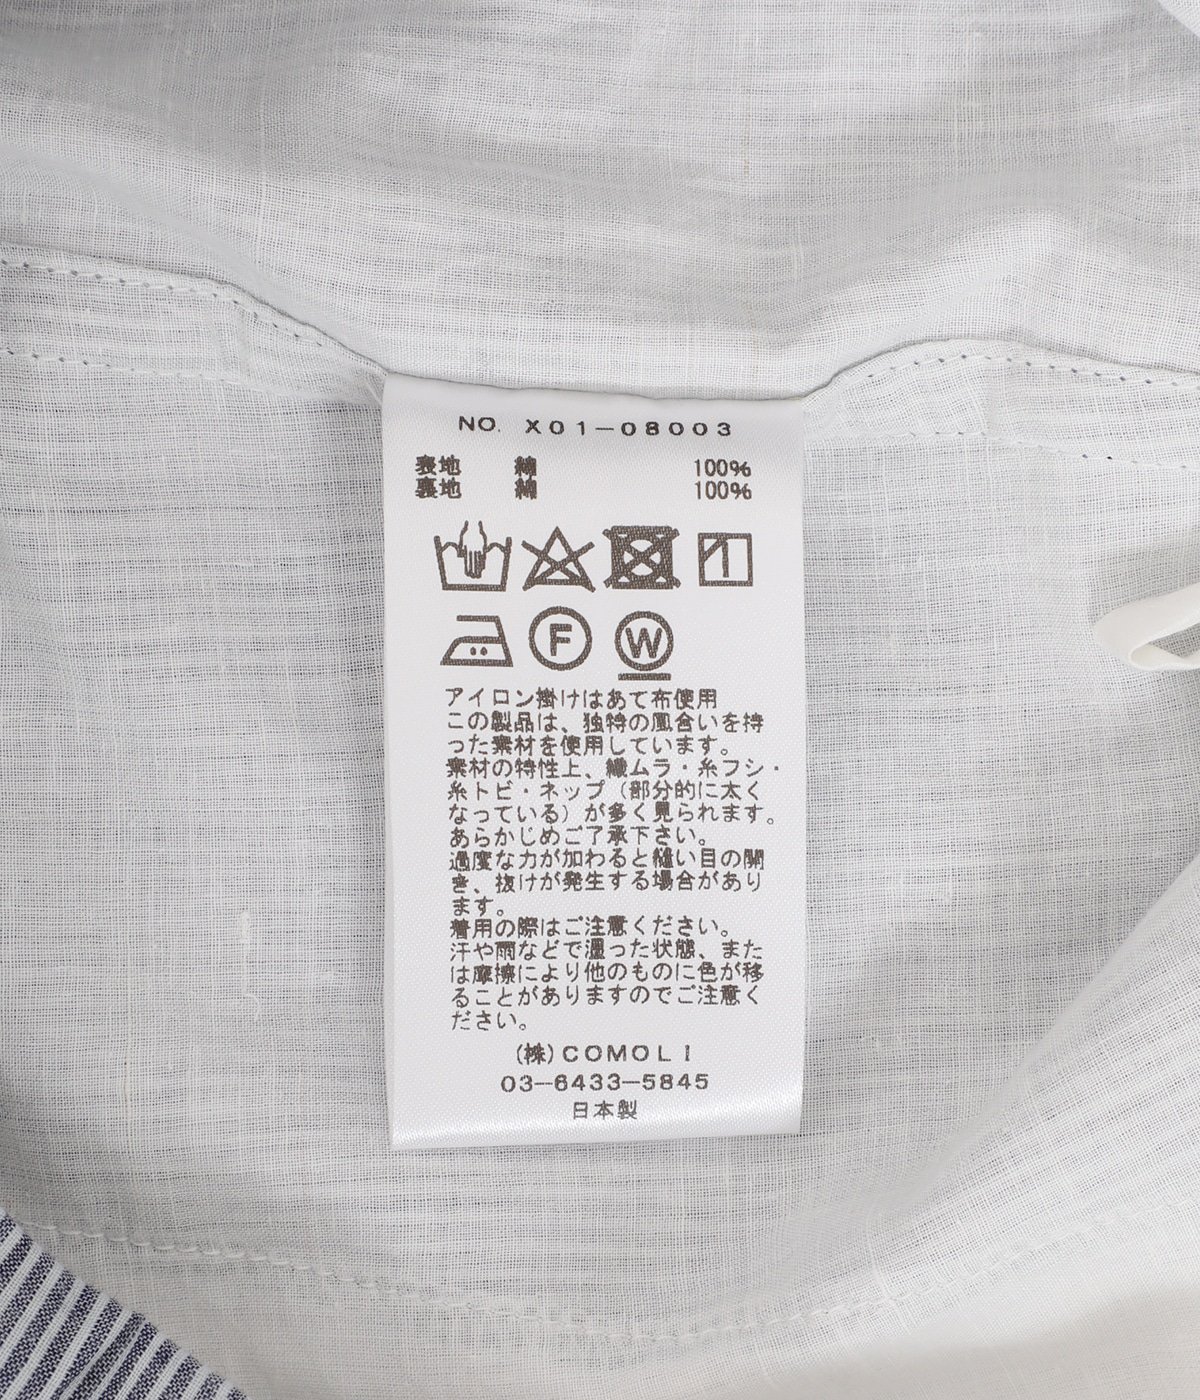 KHADIコットン パジャマ | COMOLI(コモリ) / ファッション雑貨 ナイト